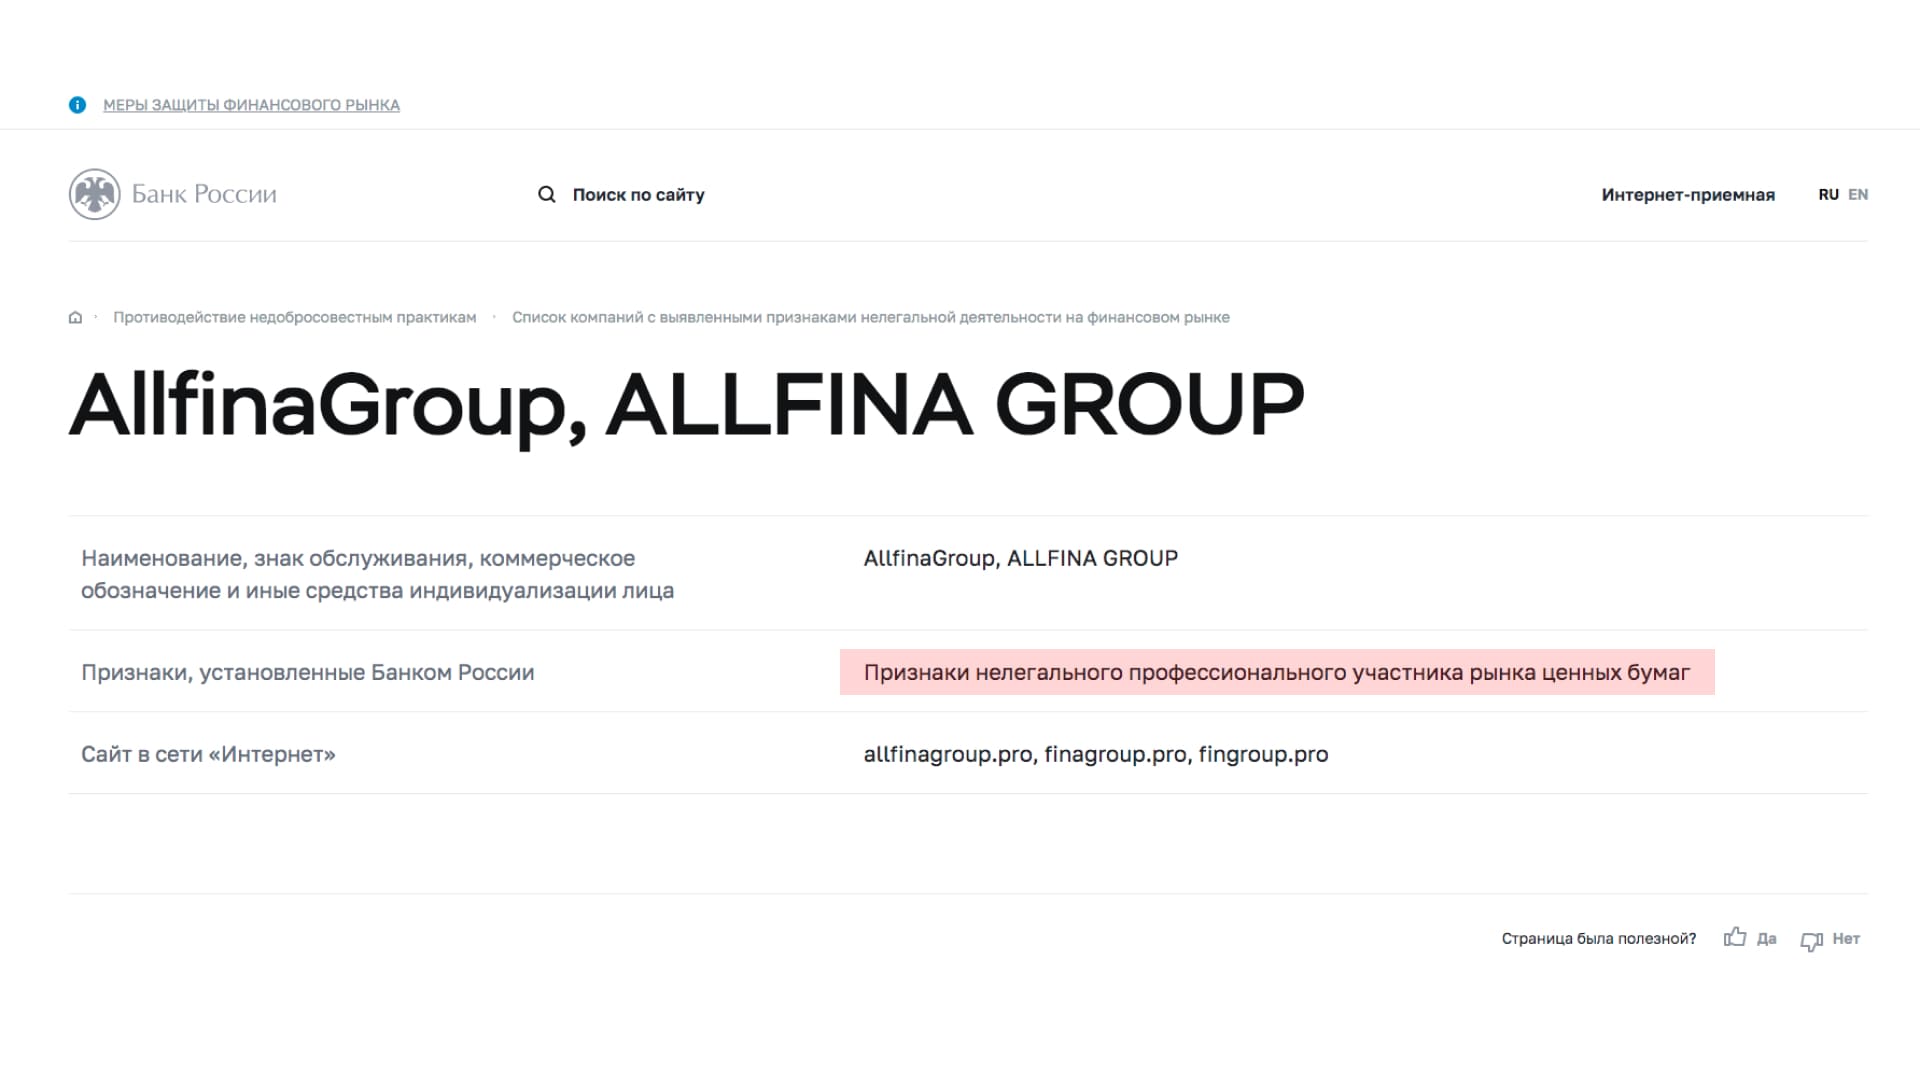 Allfina Group - как вернуть свои деньги из компании? Отзывы